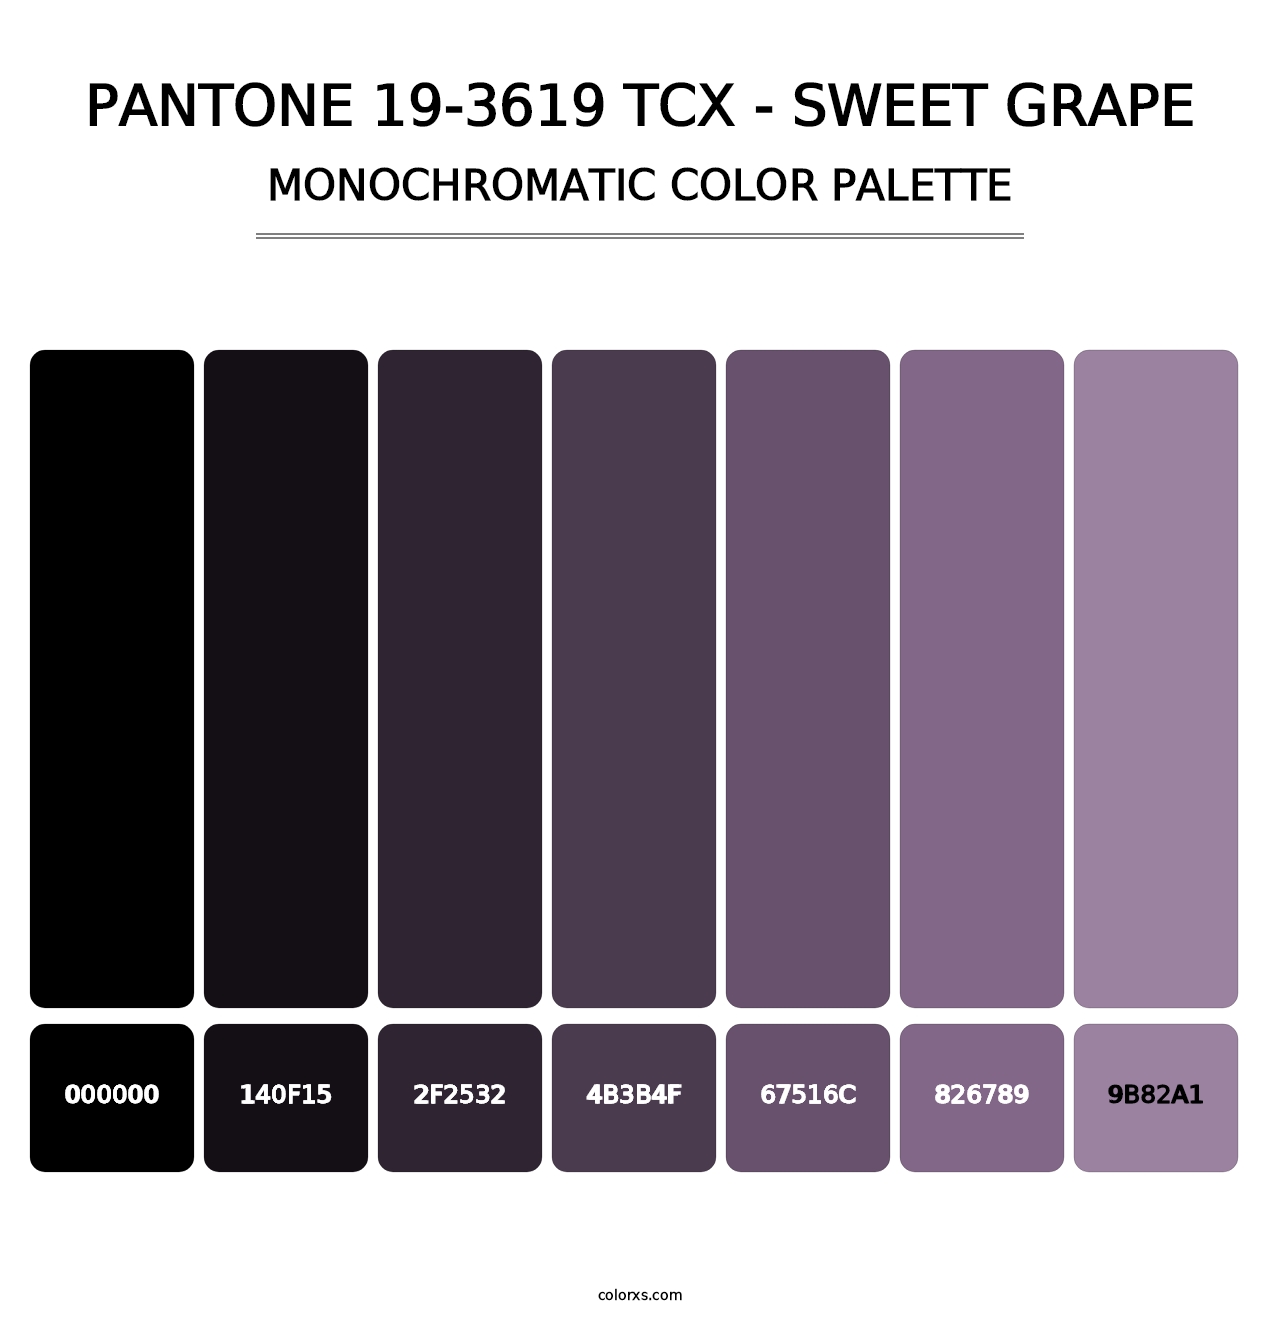 PANTONE 19-3619 TCX - Sweet Grape - Monochromatic Color Palette